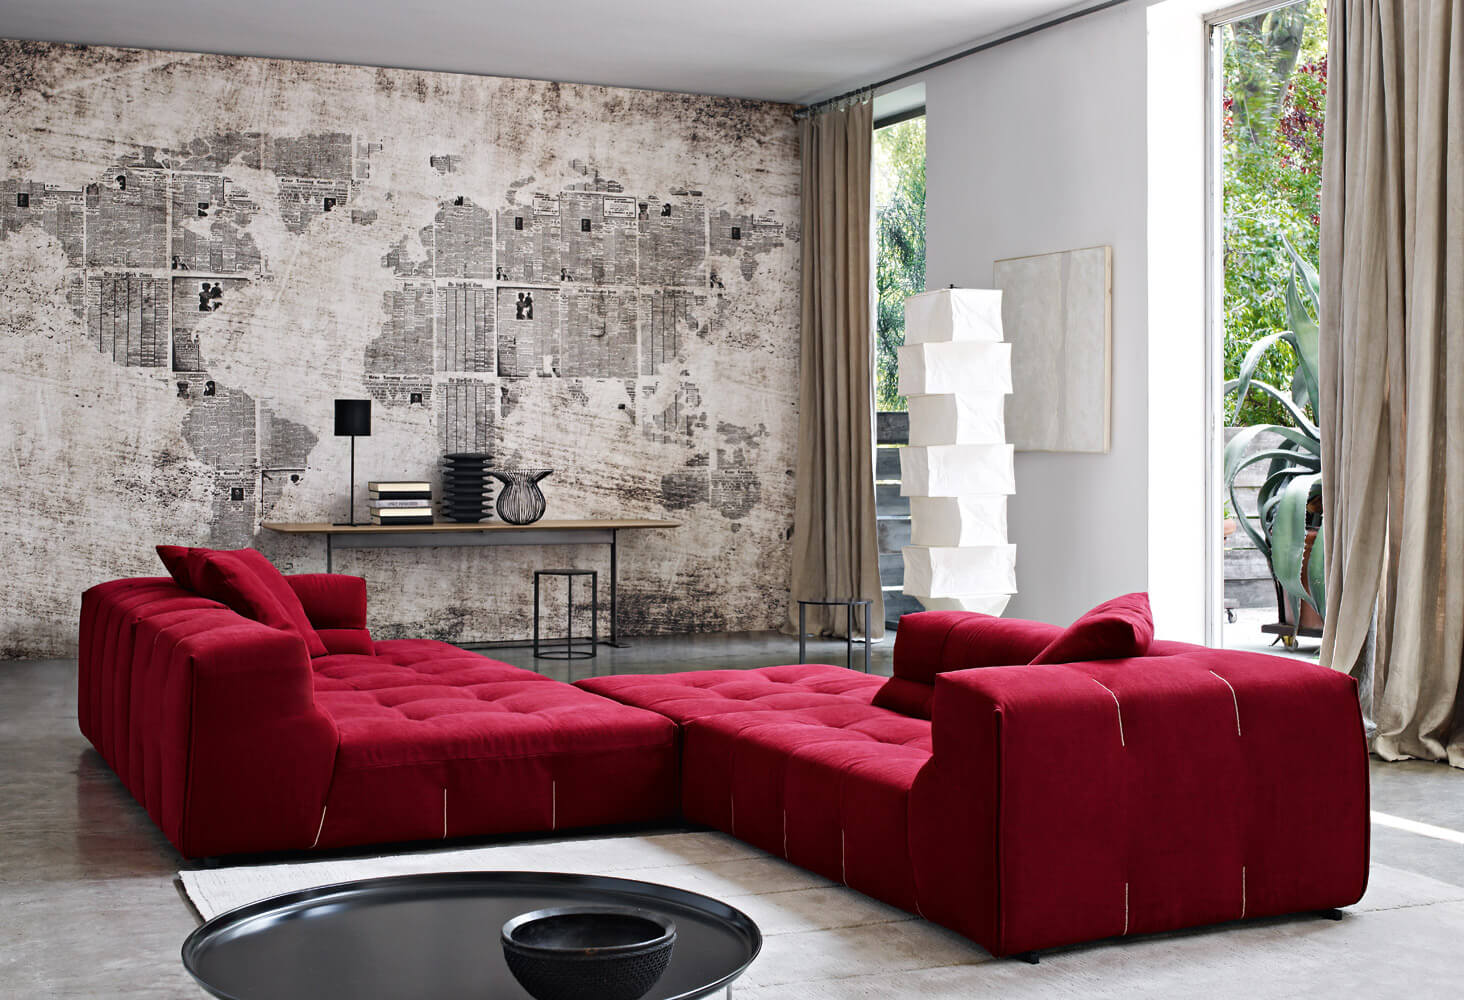 完璧とも言えるブランド力を誇る家具デザイン界のリーディングブランド 